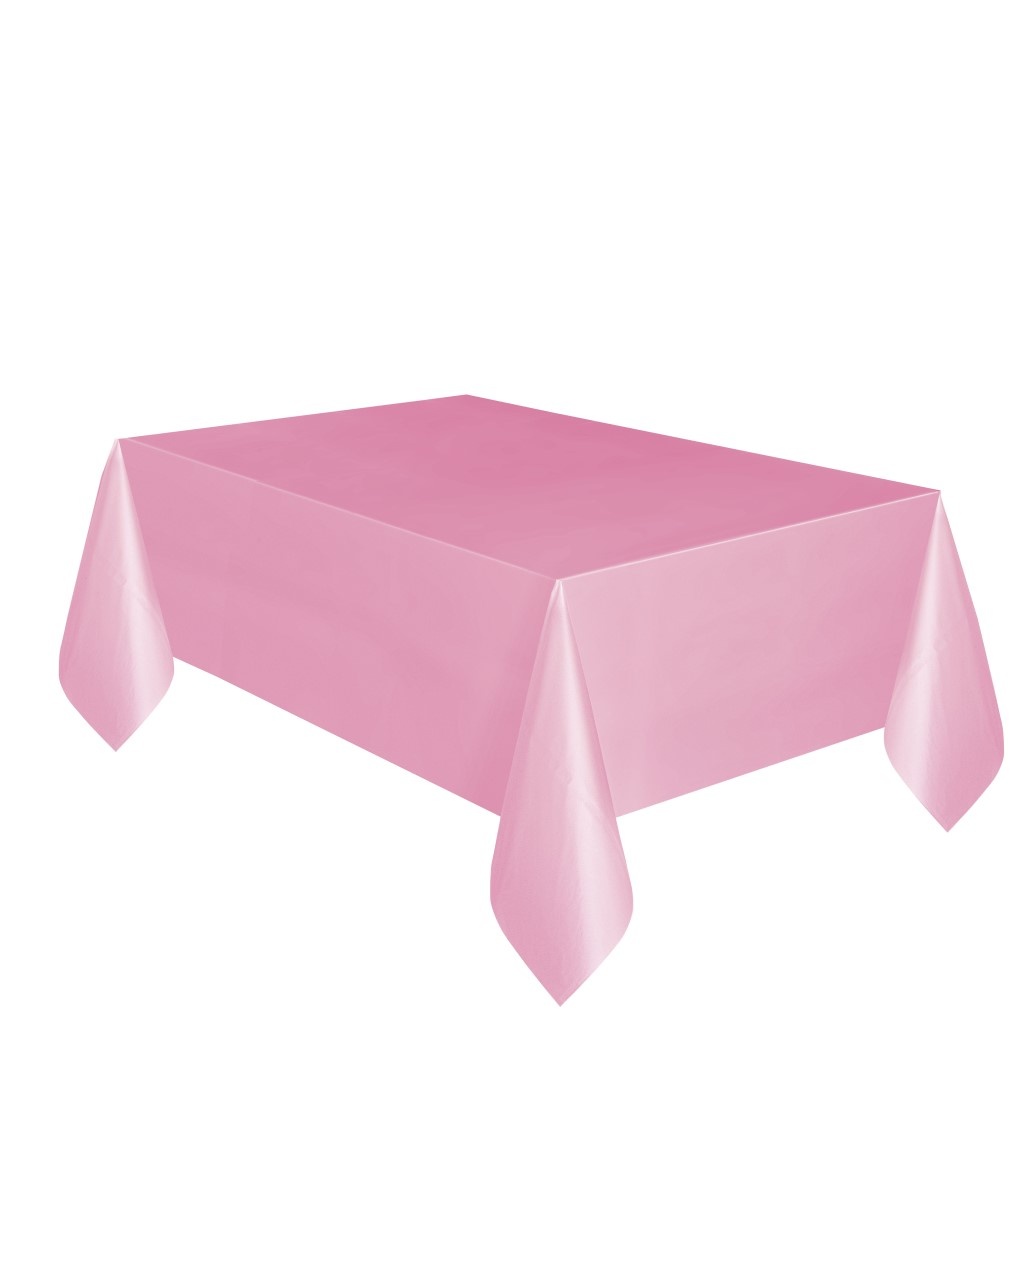 Mantel de plástico 137 x 274 cm - rosa pastel - Bigiemme